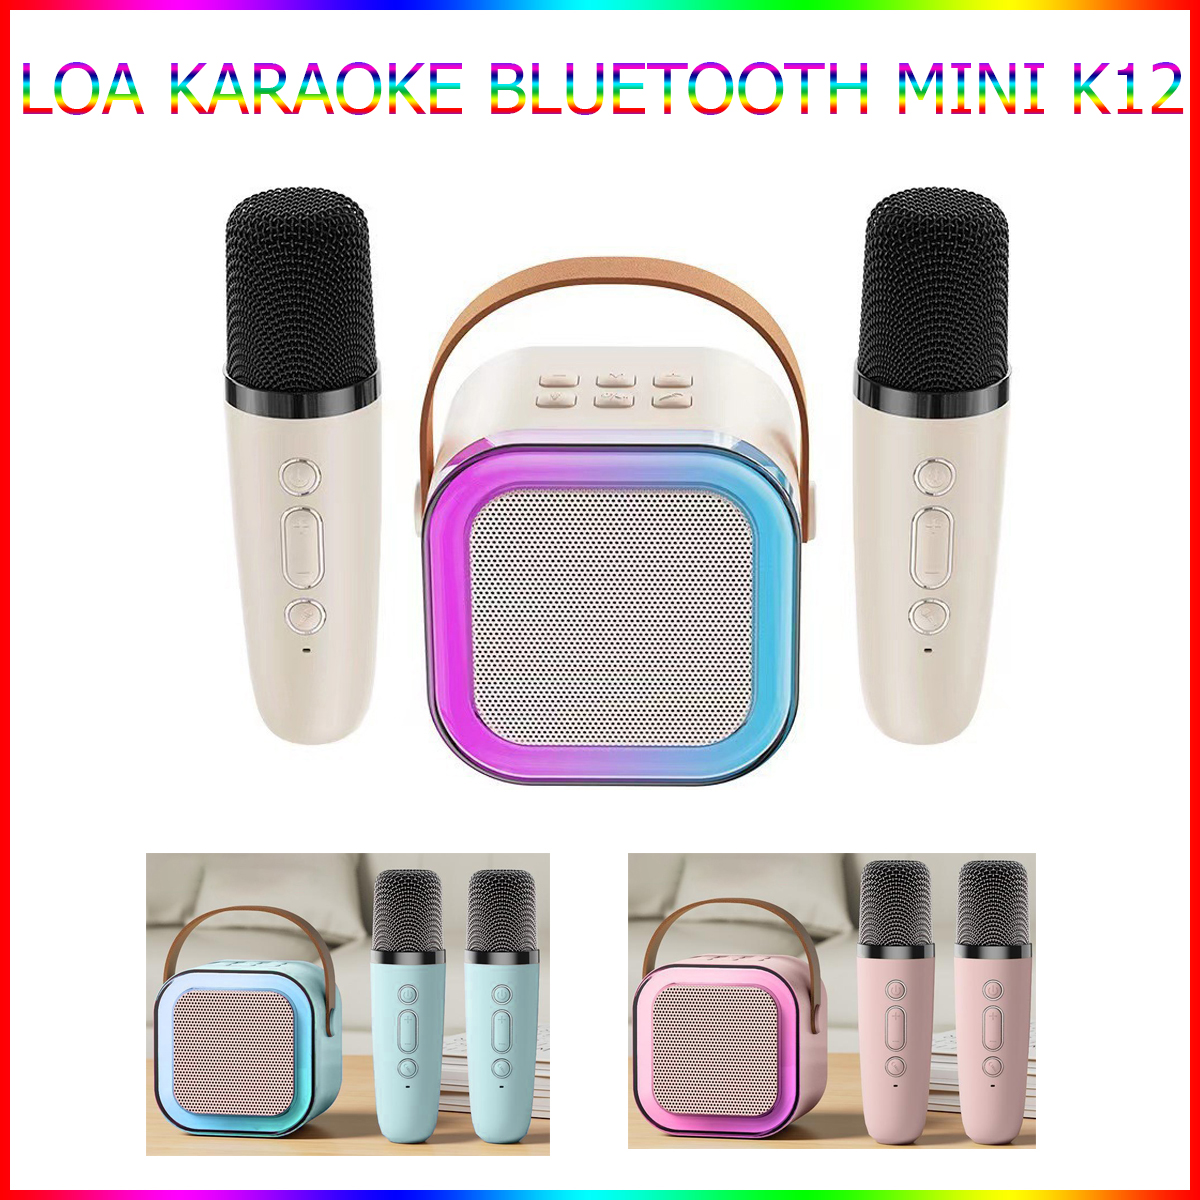 Loa Karaoke Bluetooth Mini K12 Có Đèn Led Kèm 2 Mic Không Dây Hát Hay